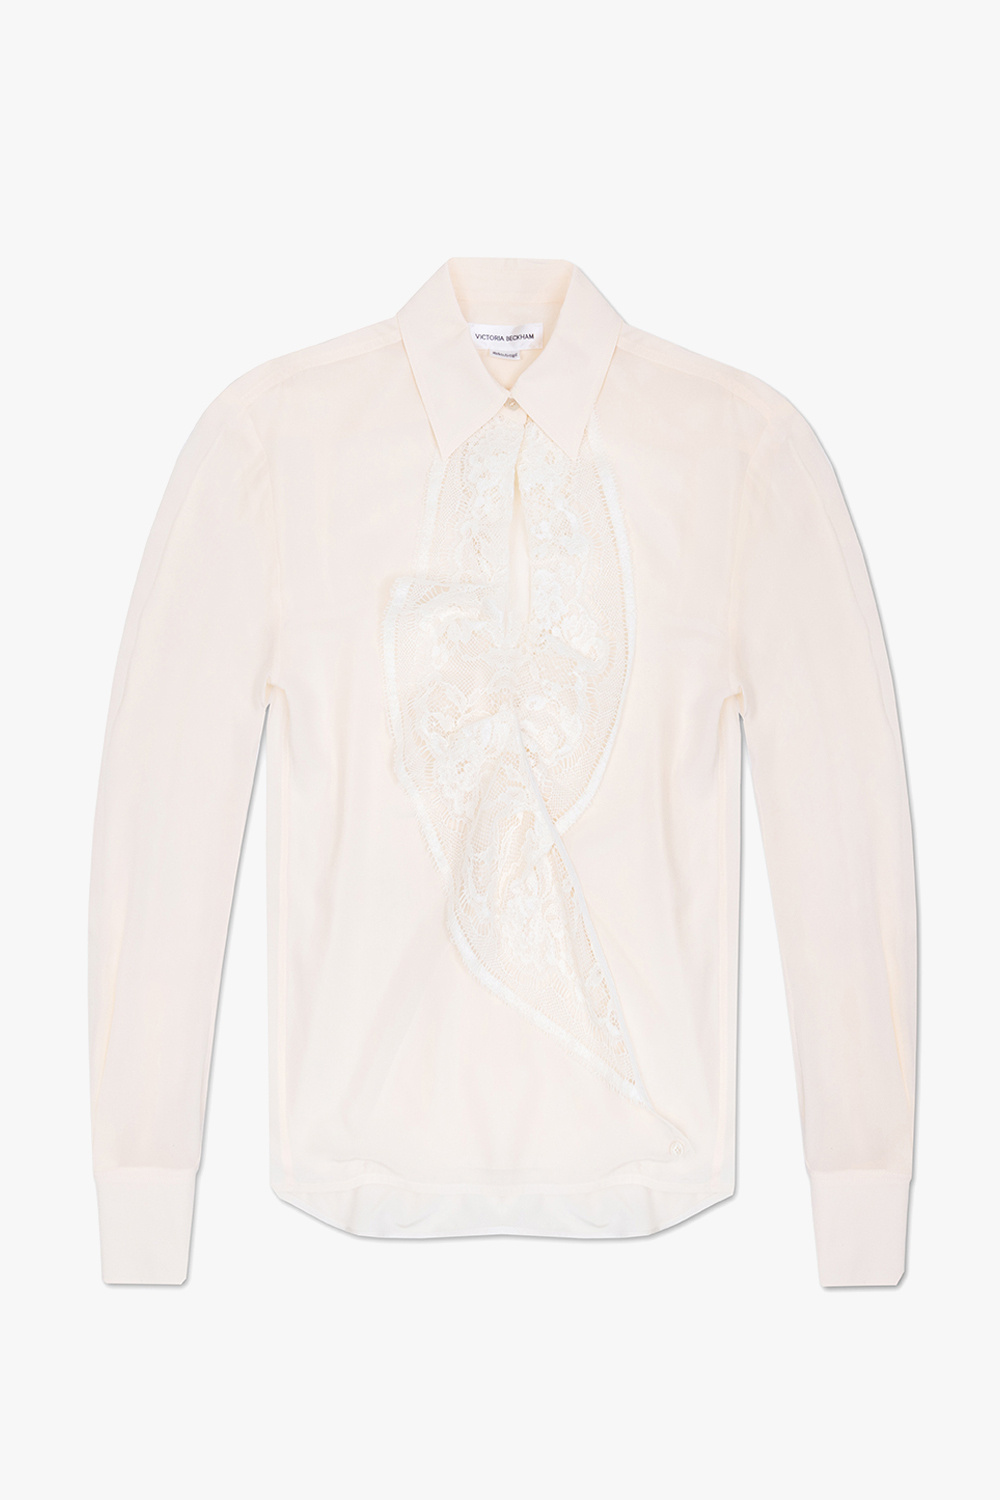 Victoria Beckham Silk shirt with cut-out